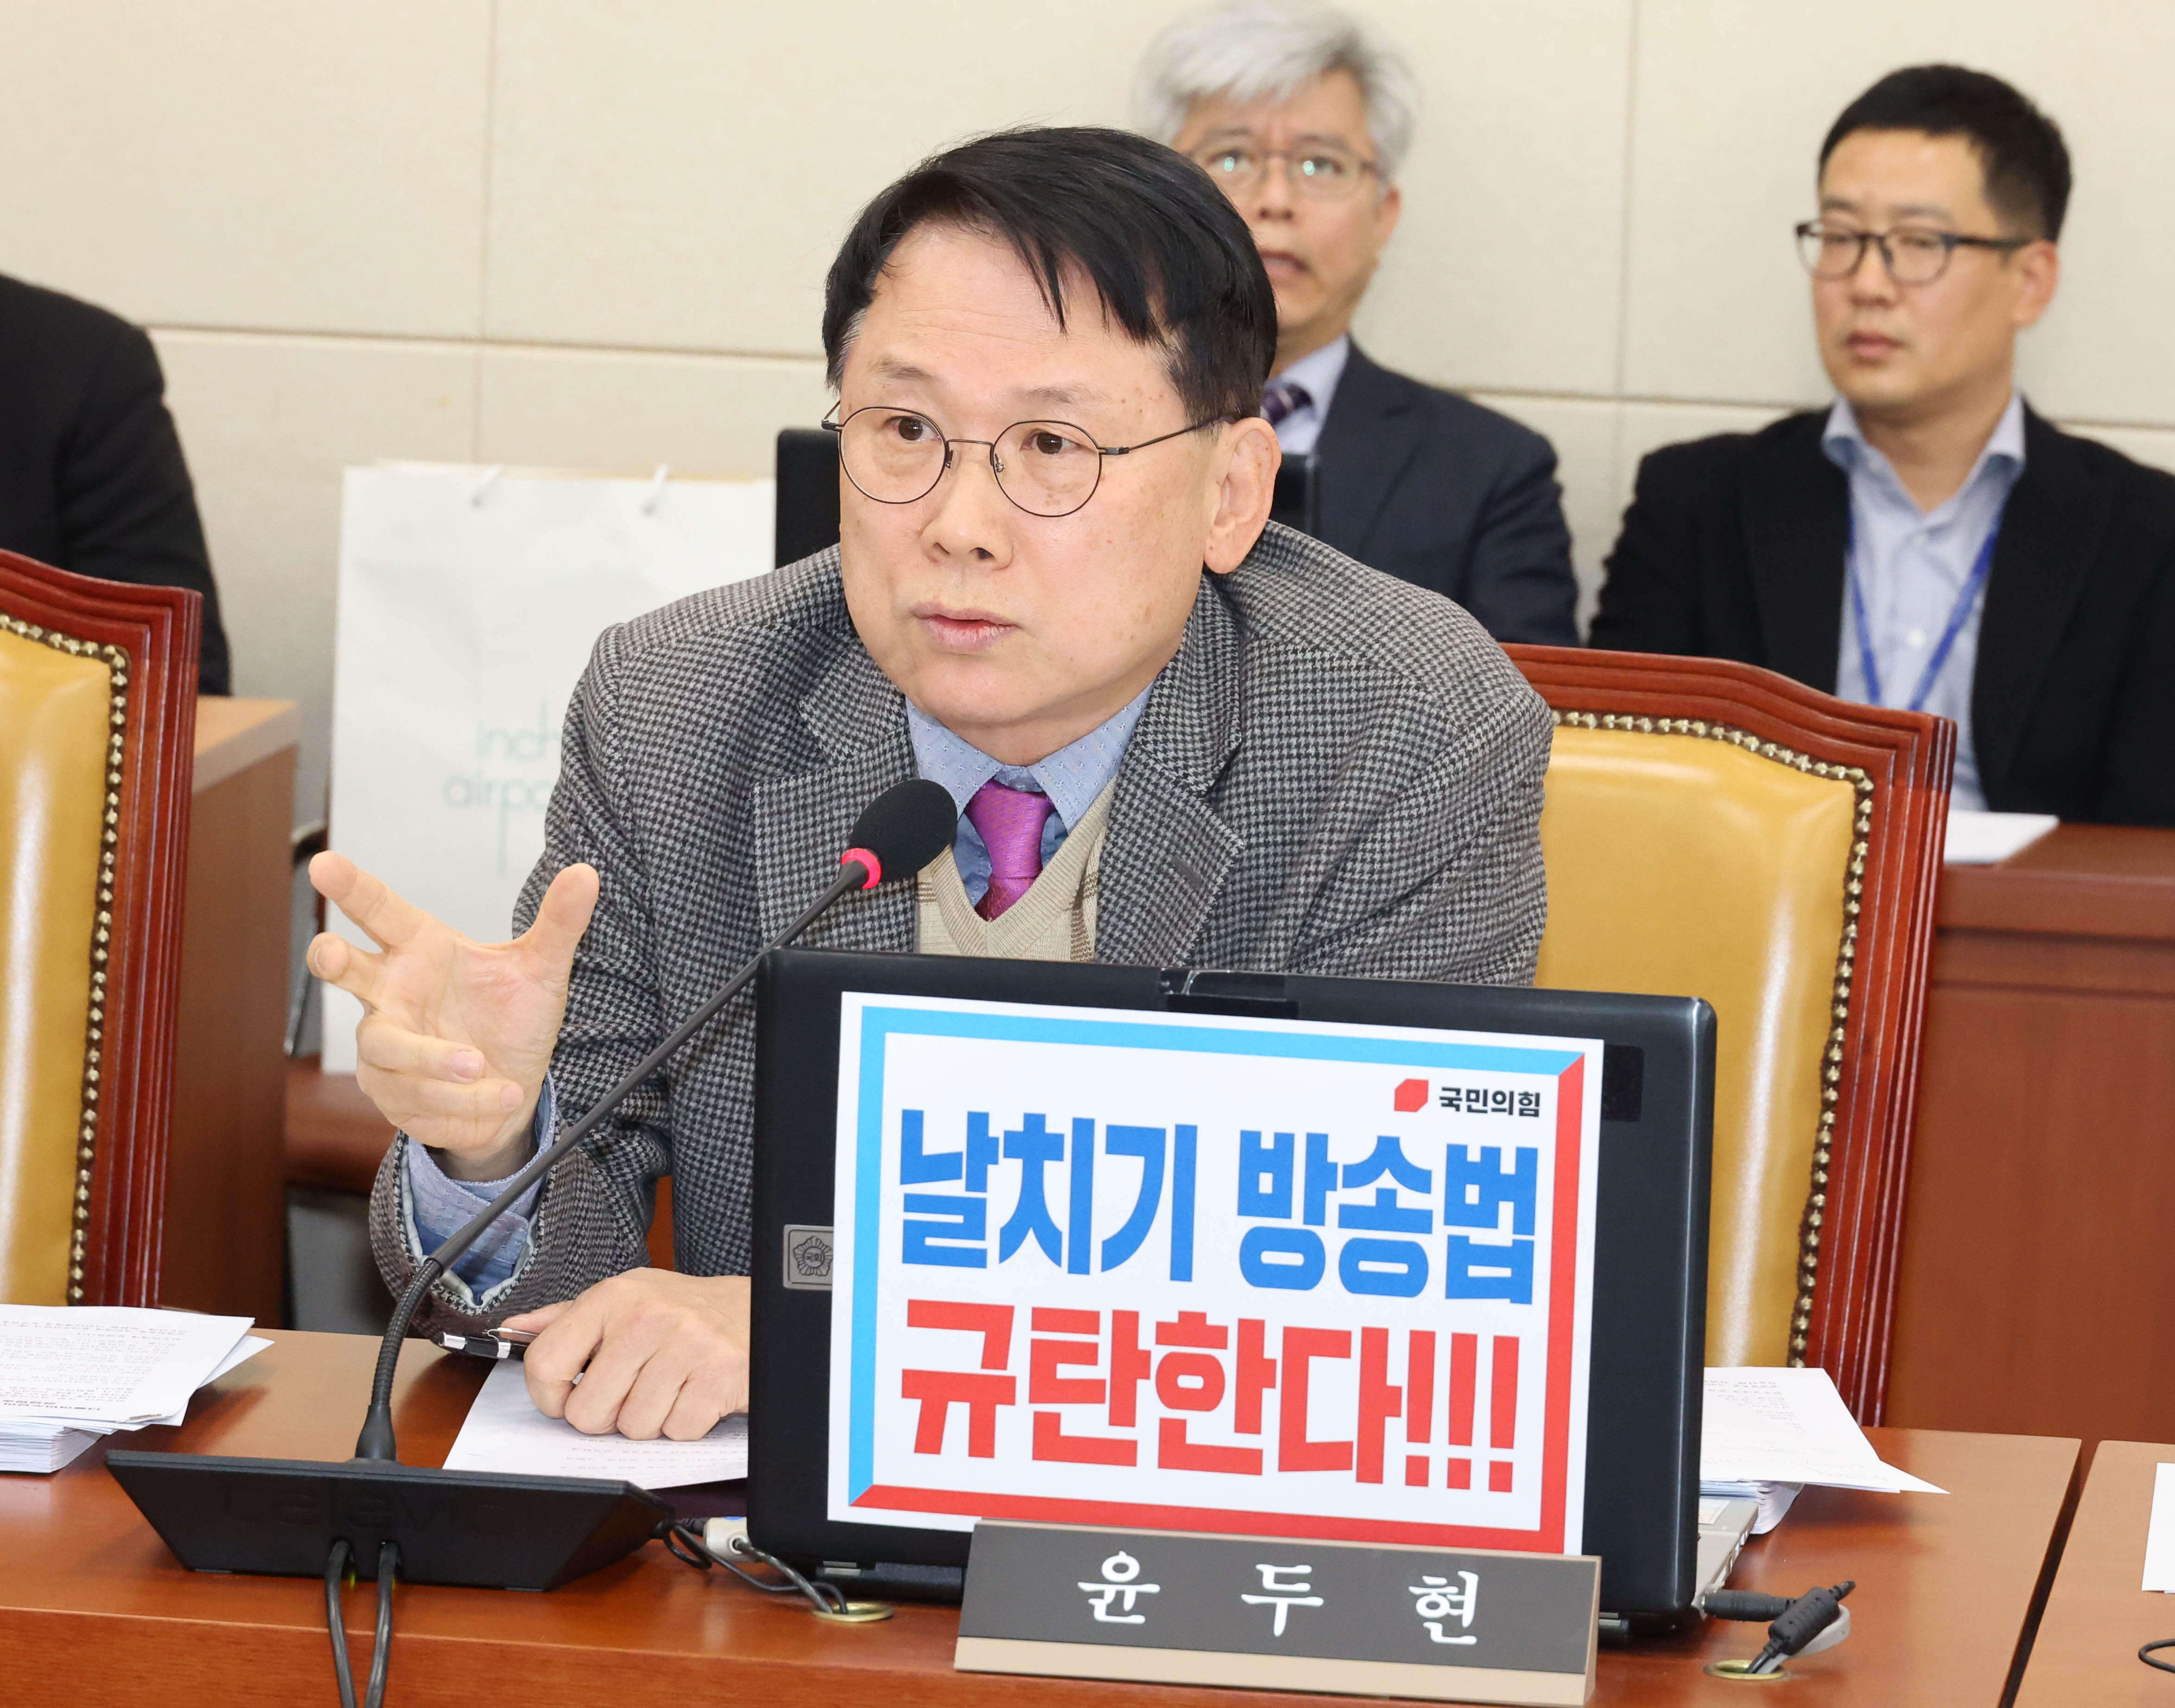 방송법 관련 반대토론하는 윤두현 의원